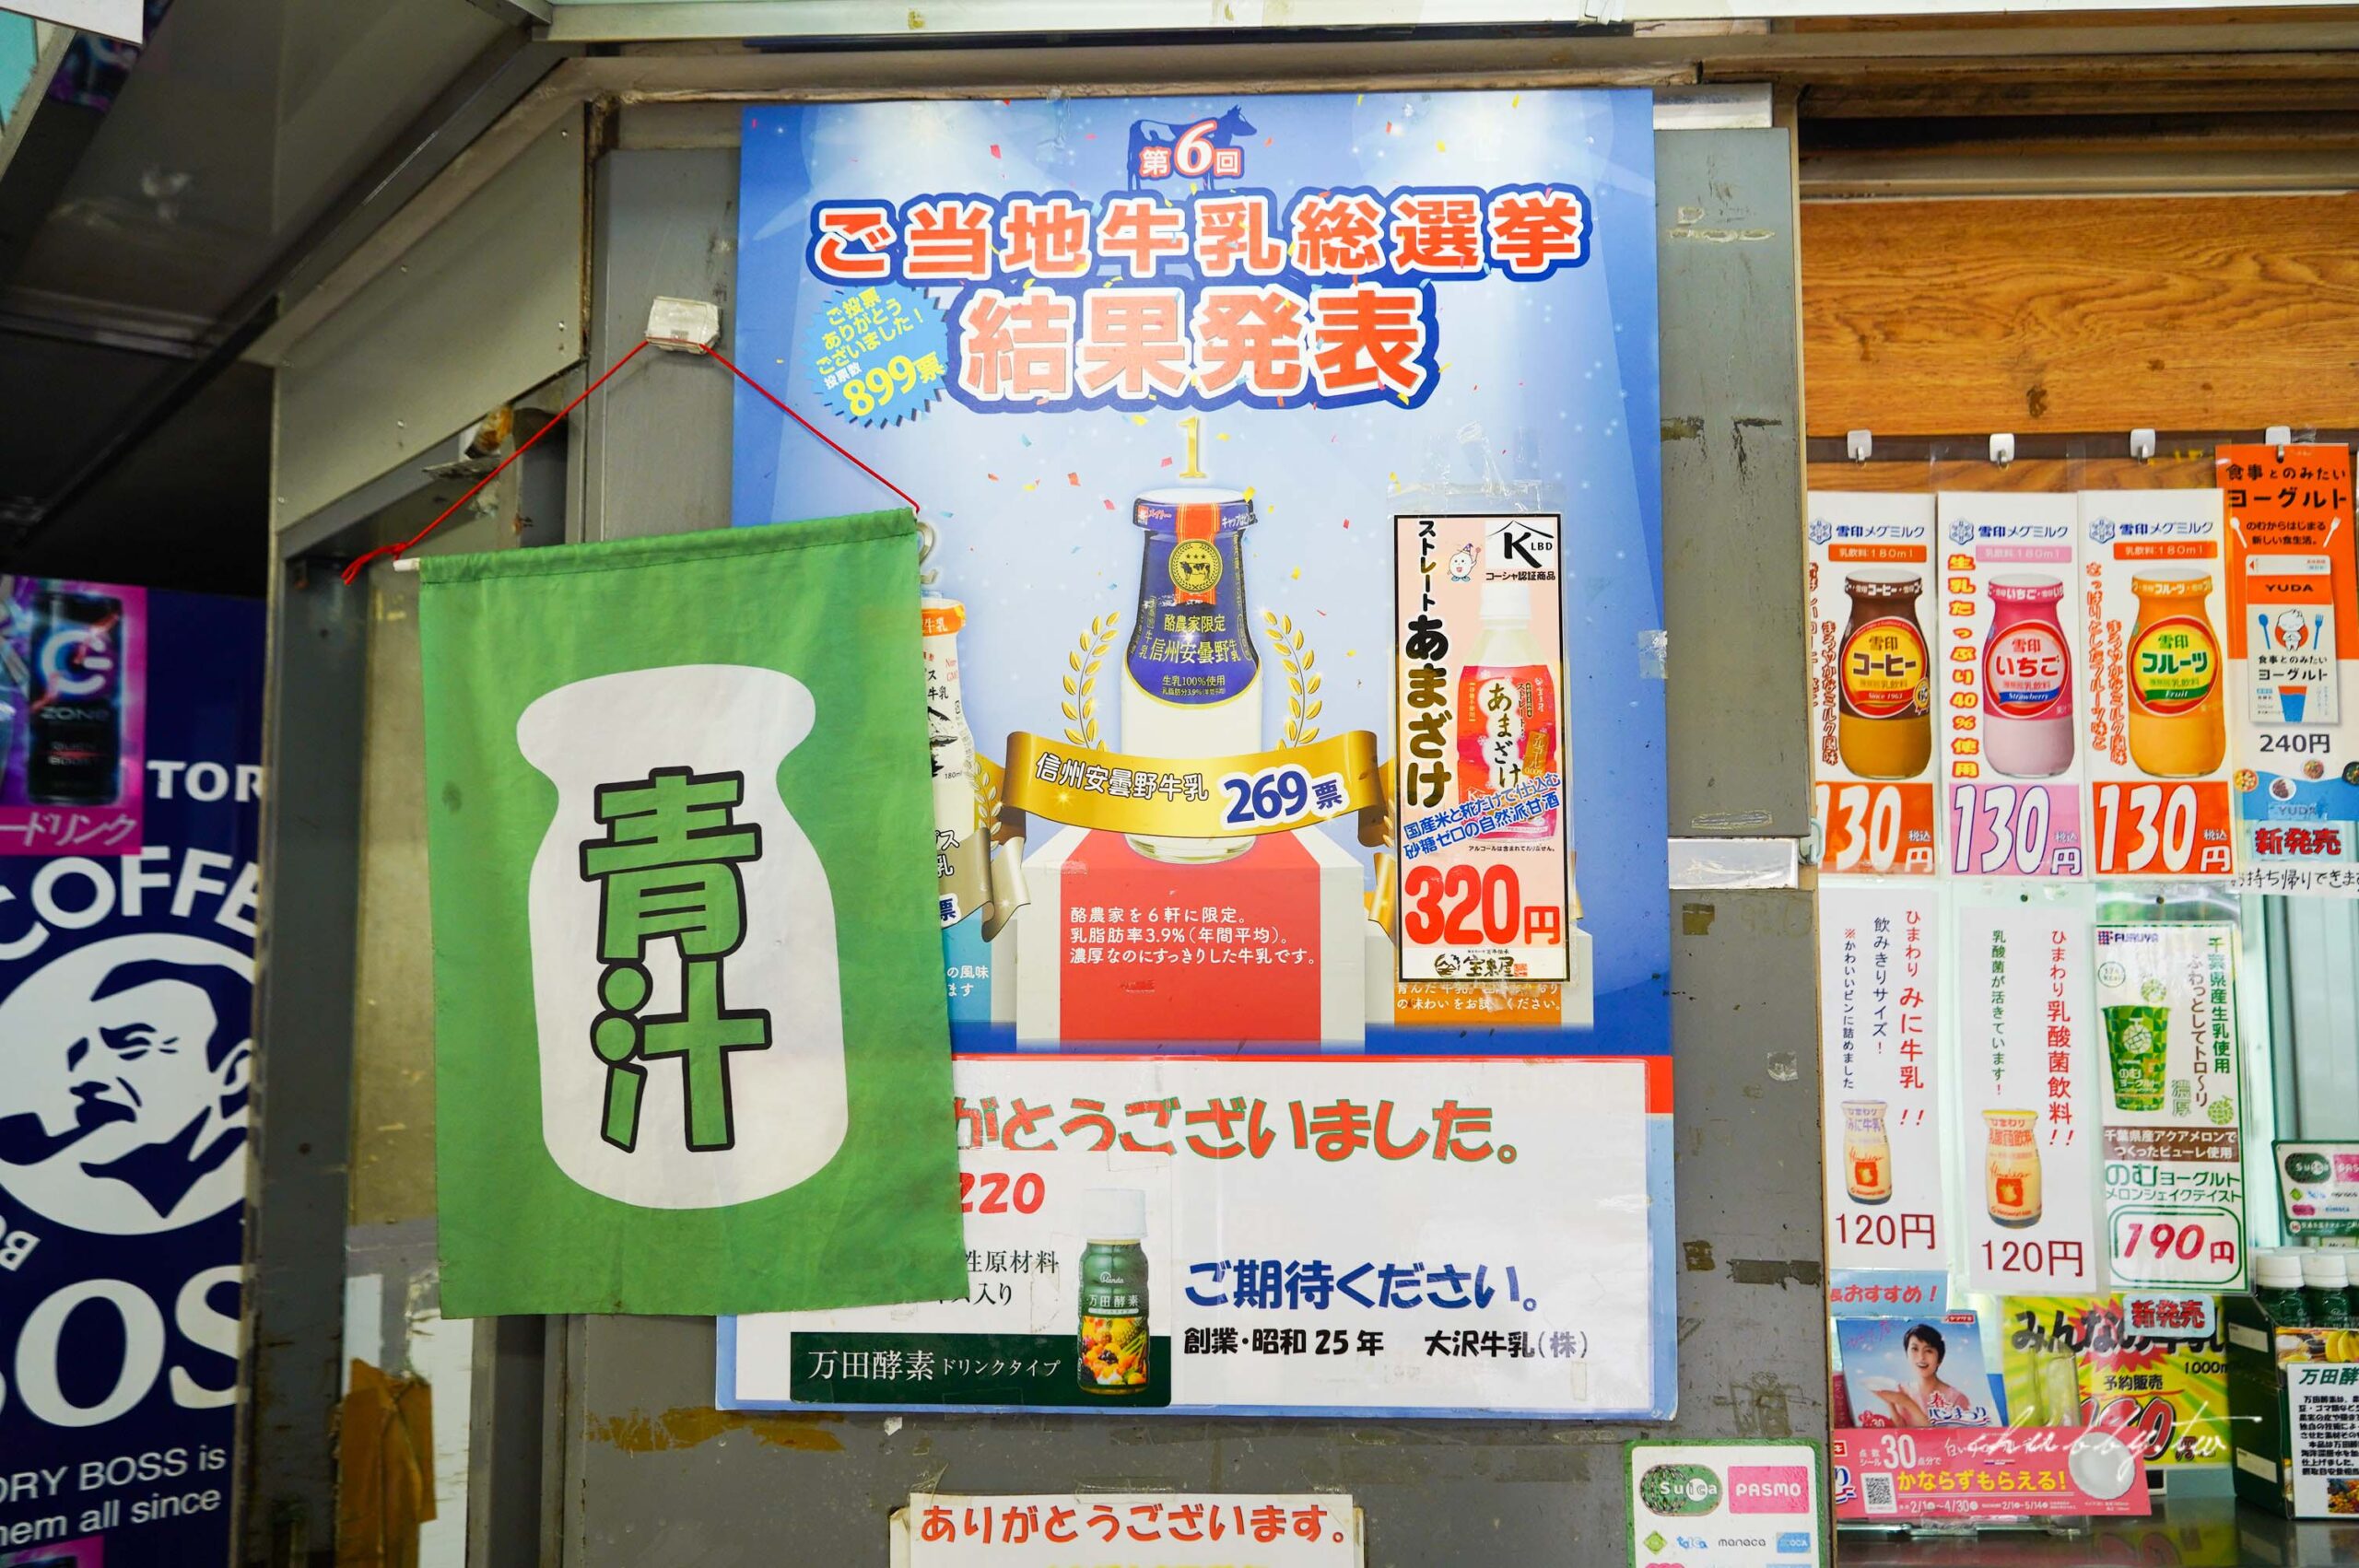 【東京美食】月台上的牛奶專賣店『酪MILK SHOP LUCK RAKU』 一次享用日本全國知名牛奶